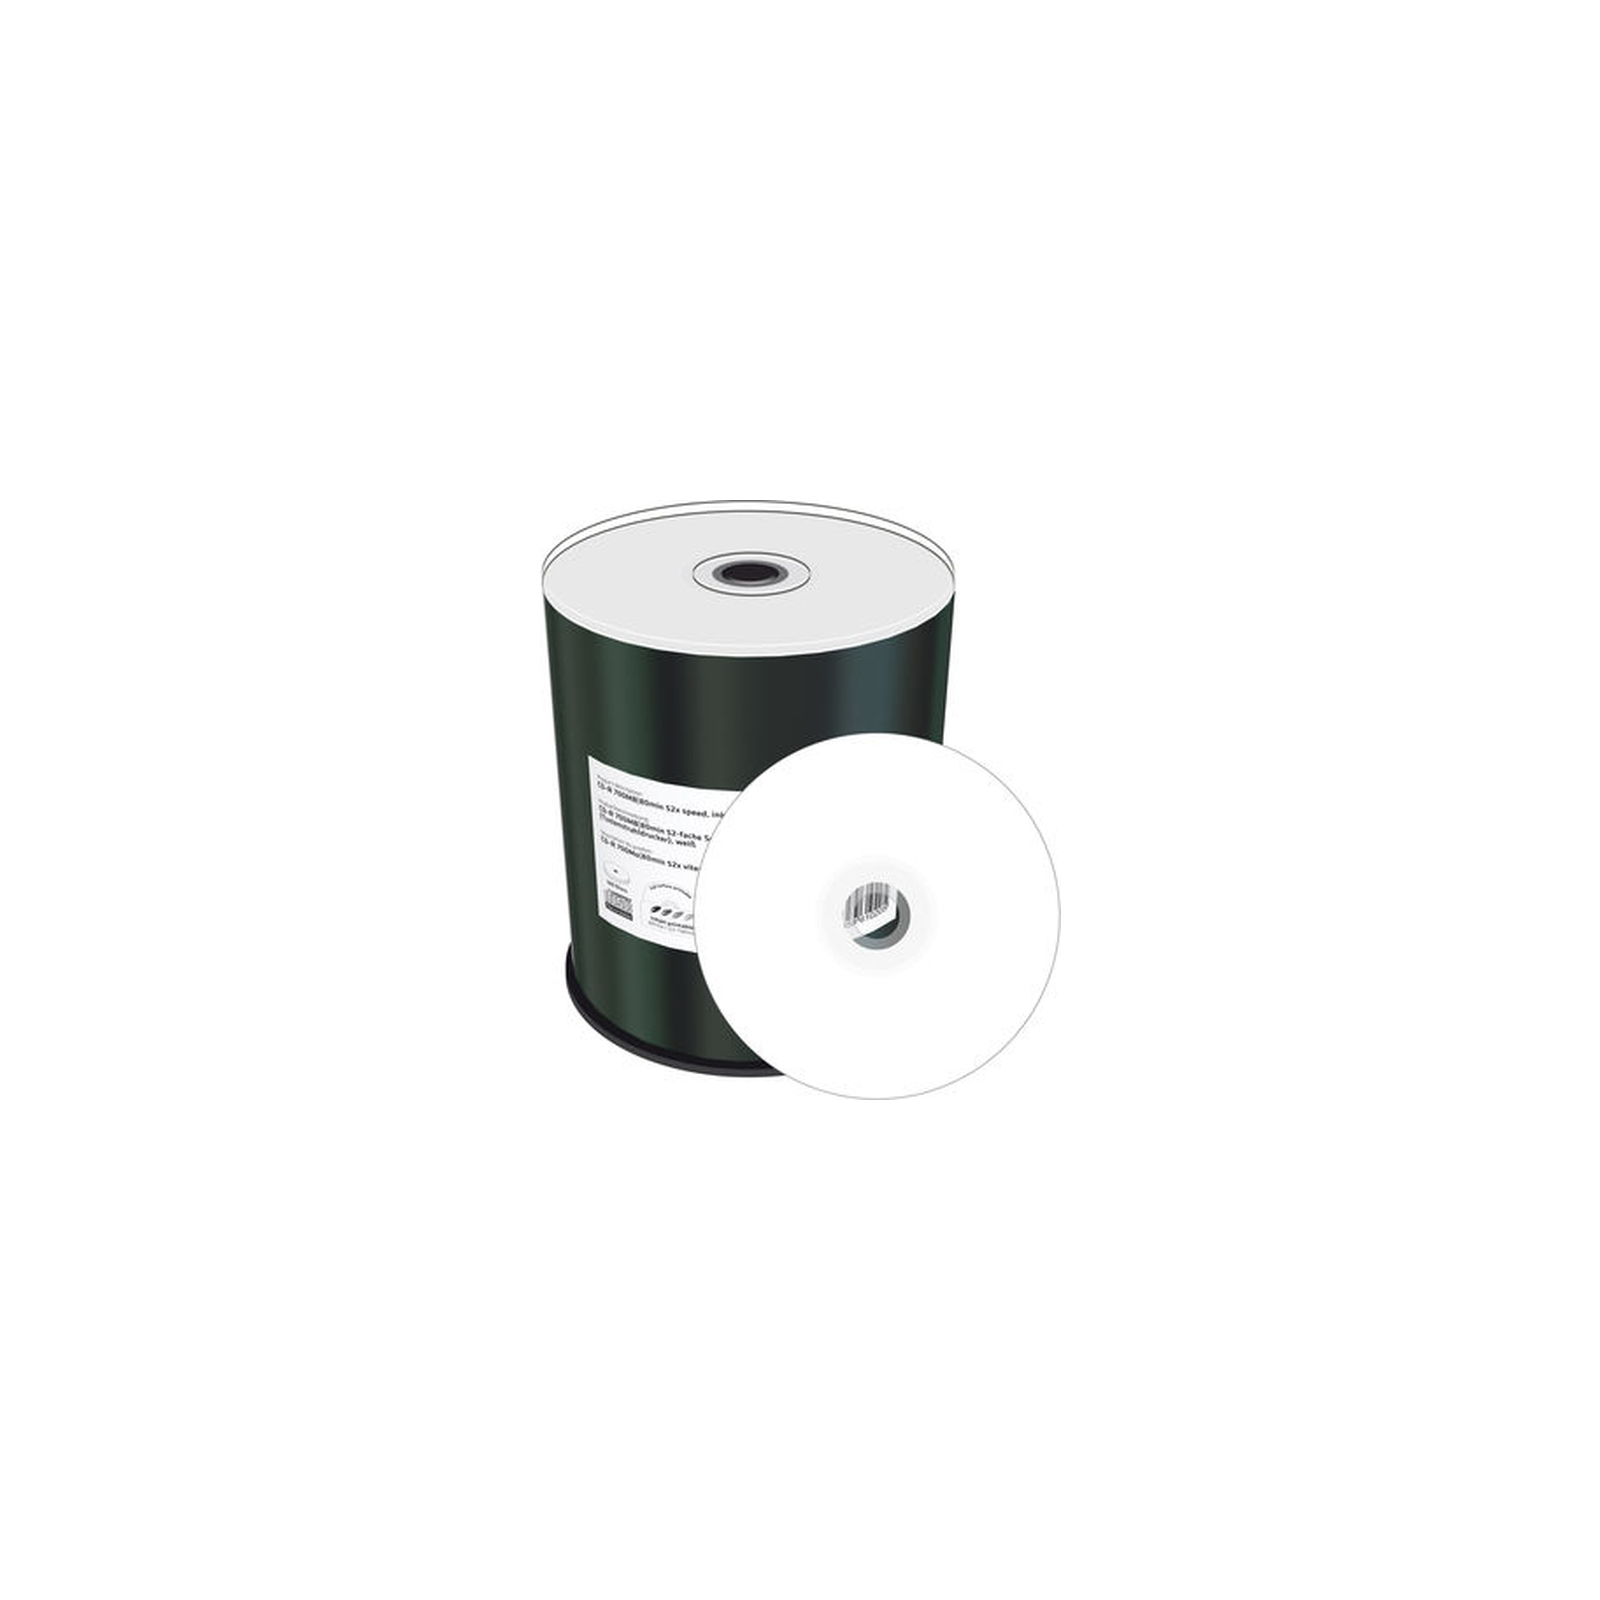 Диск CD Mediarange CD-R 700MB 80min 52x speed, inkjet fullsurface printable, Cake 100 (MR203)